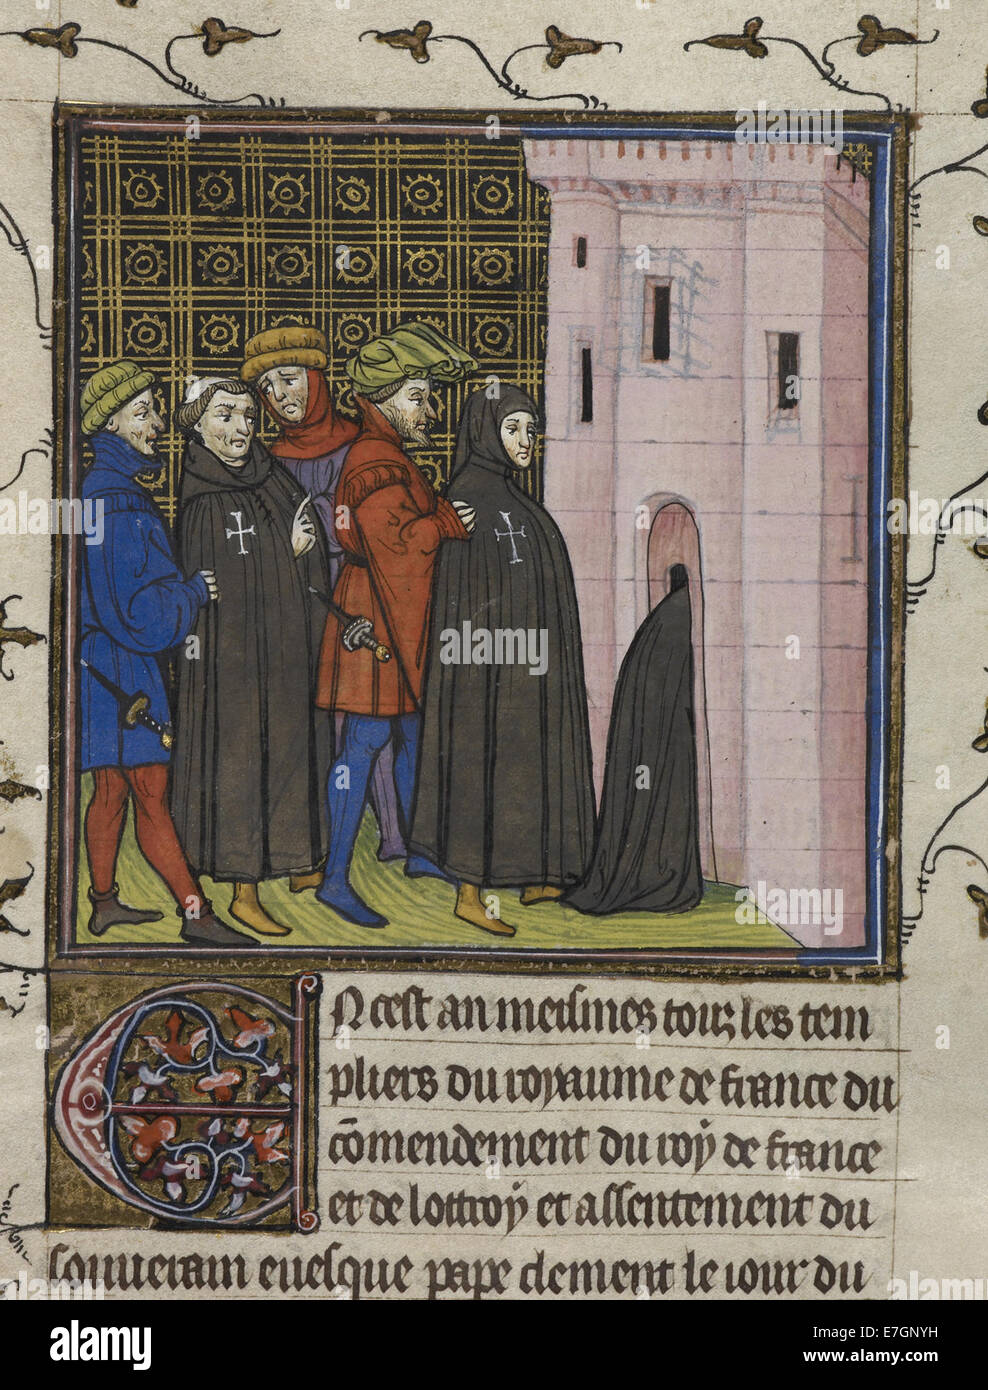 Arrest of the Templars - Chroniques de France ou de St. Denis (end 14th C), f.42v - BL Royal MS 20 C VII Stock Photo